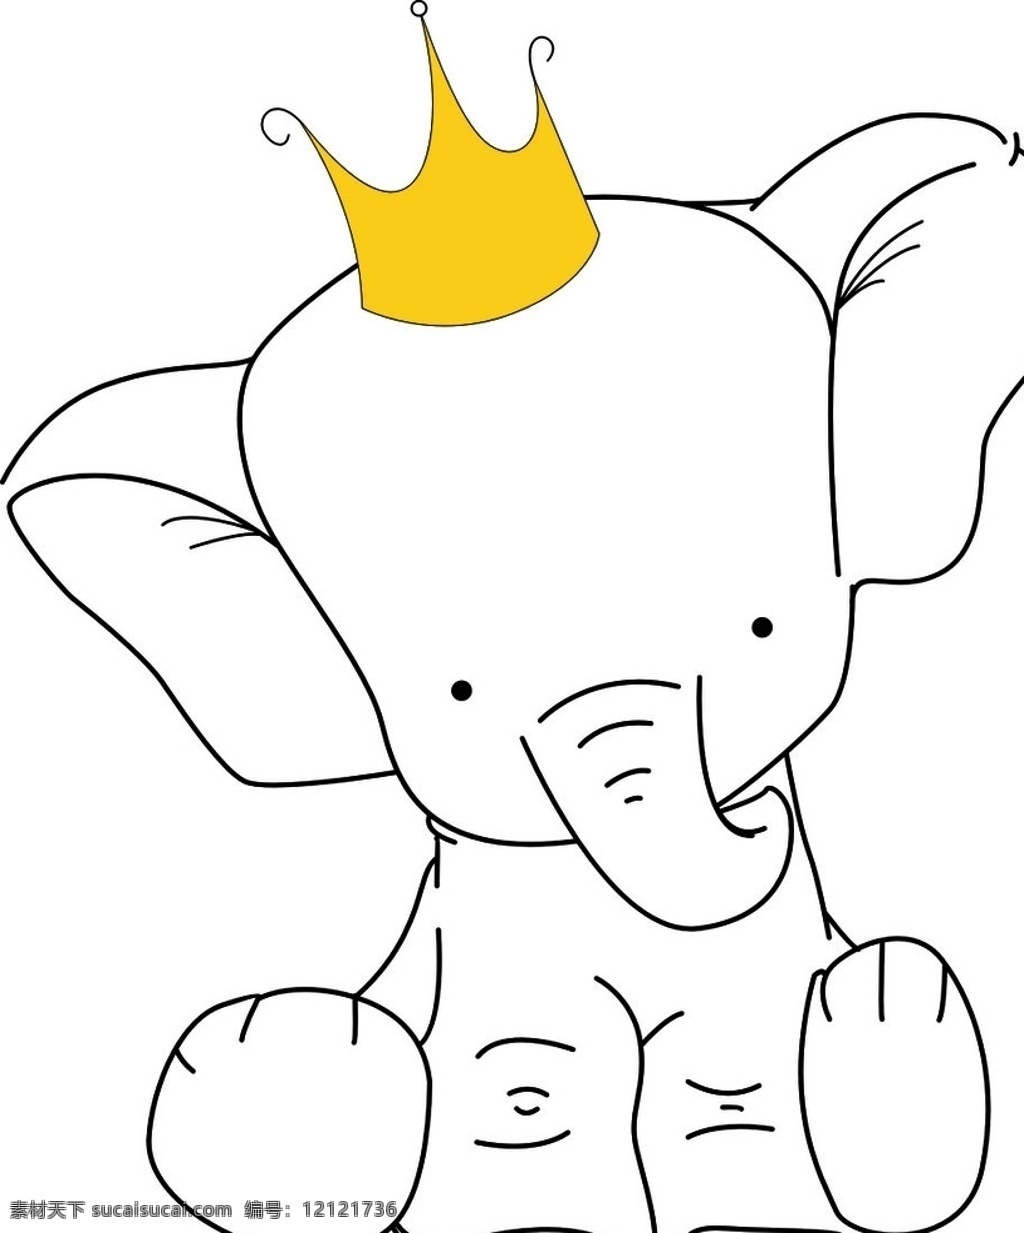 皇冠象 皇冠 金光 小象 大象 可爱象 卡通小象